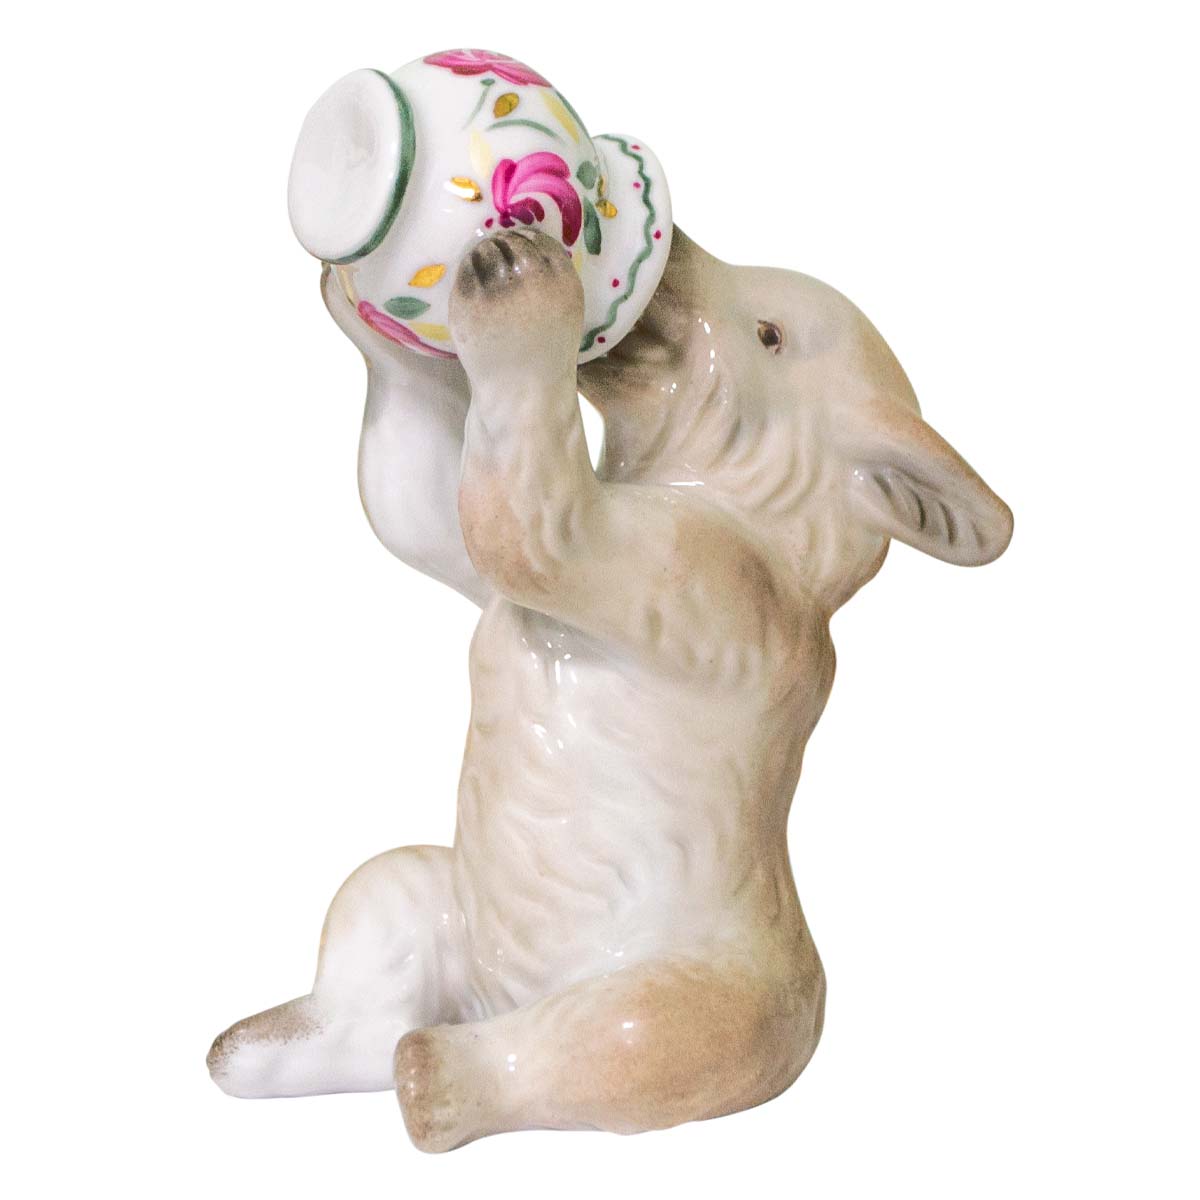 Скульптура "Медвежонок с горшочком" автор Сотников А.Г.